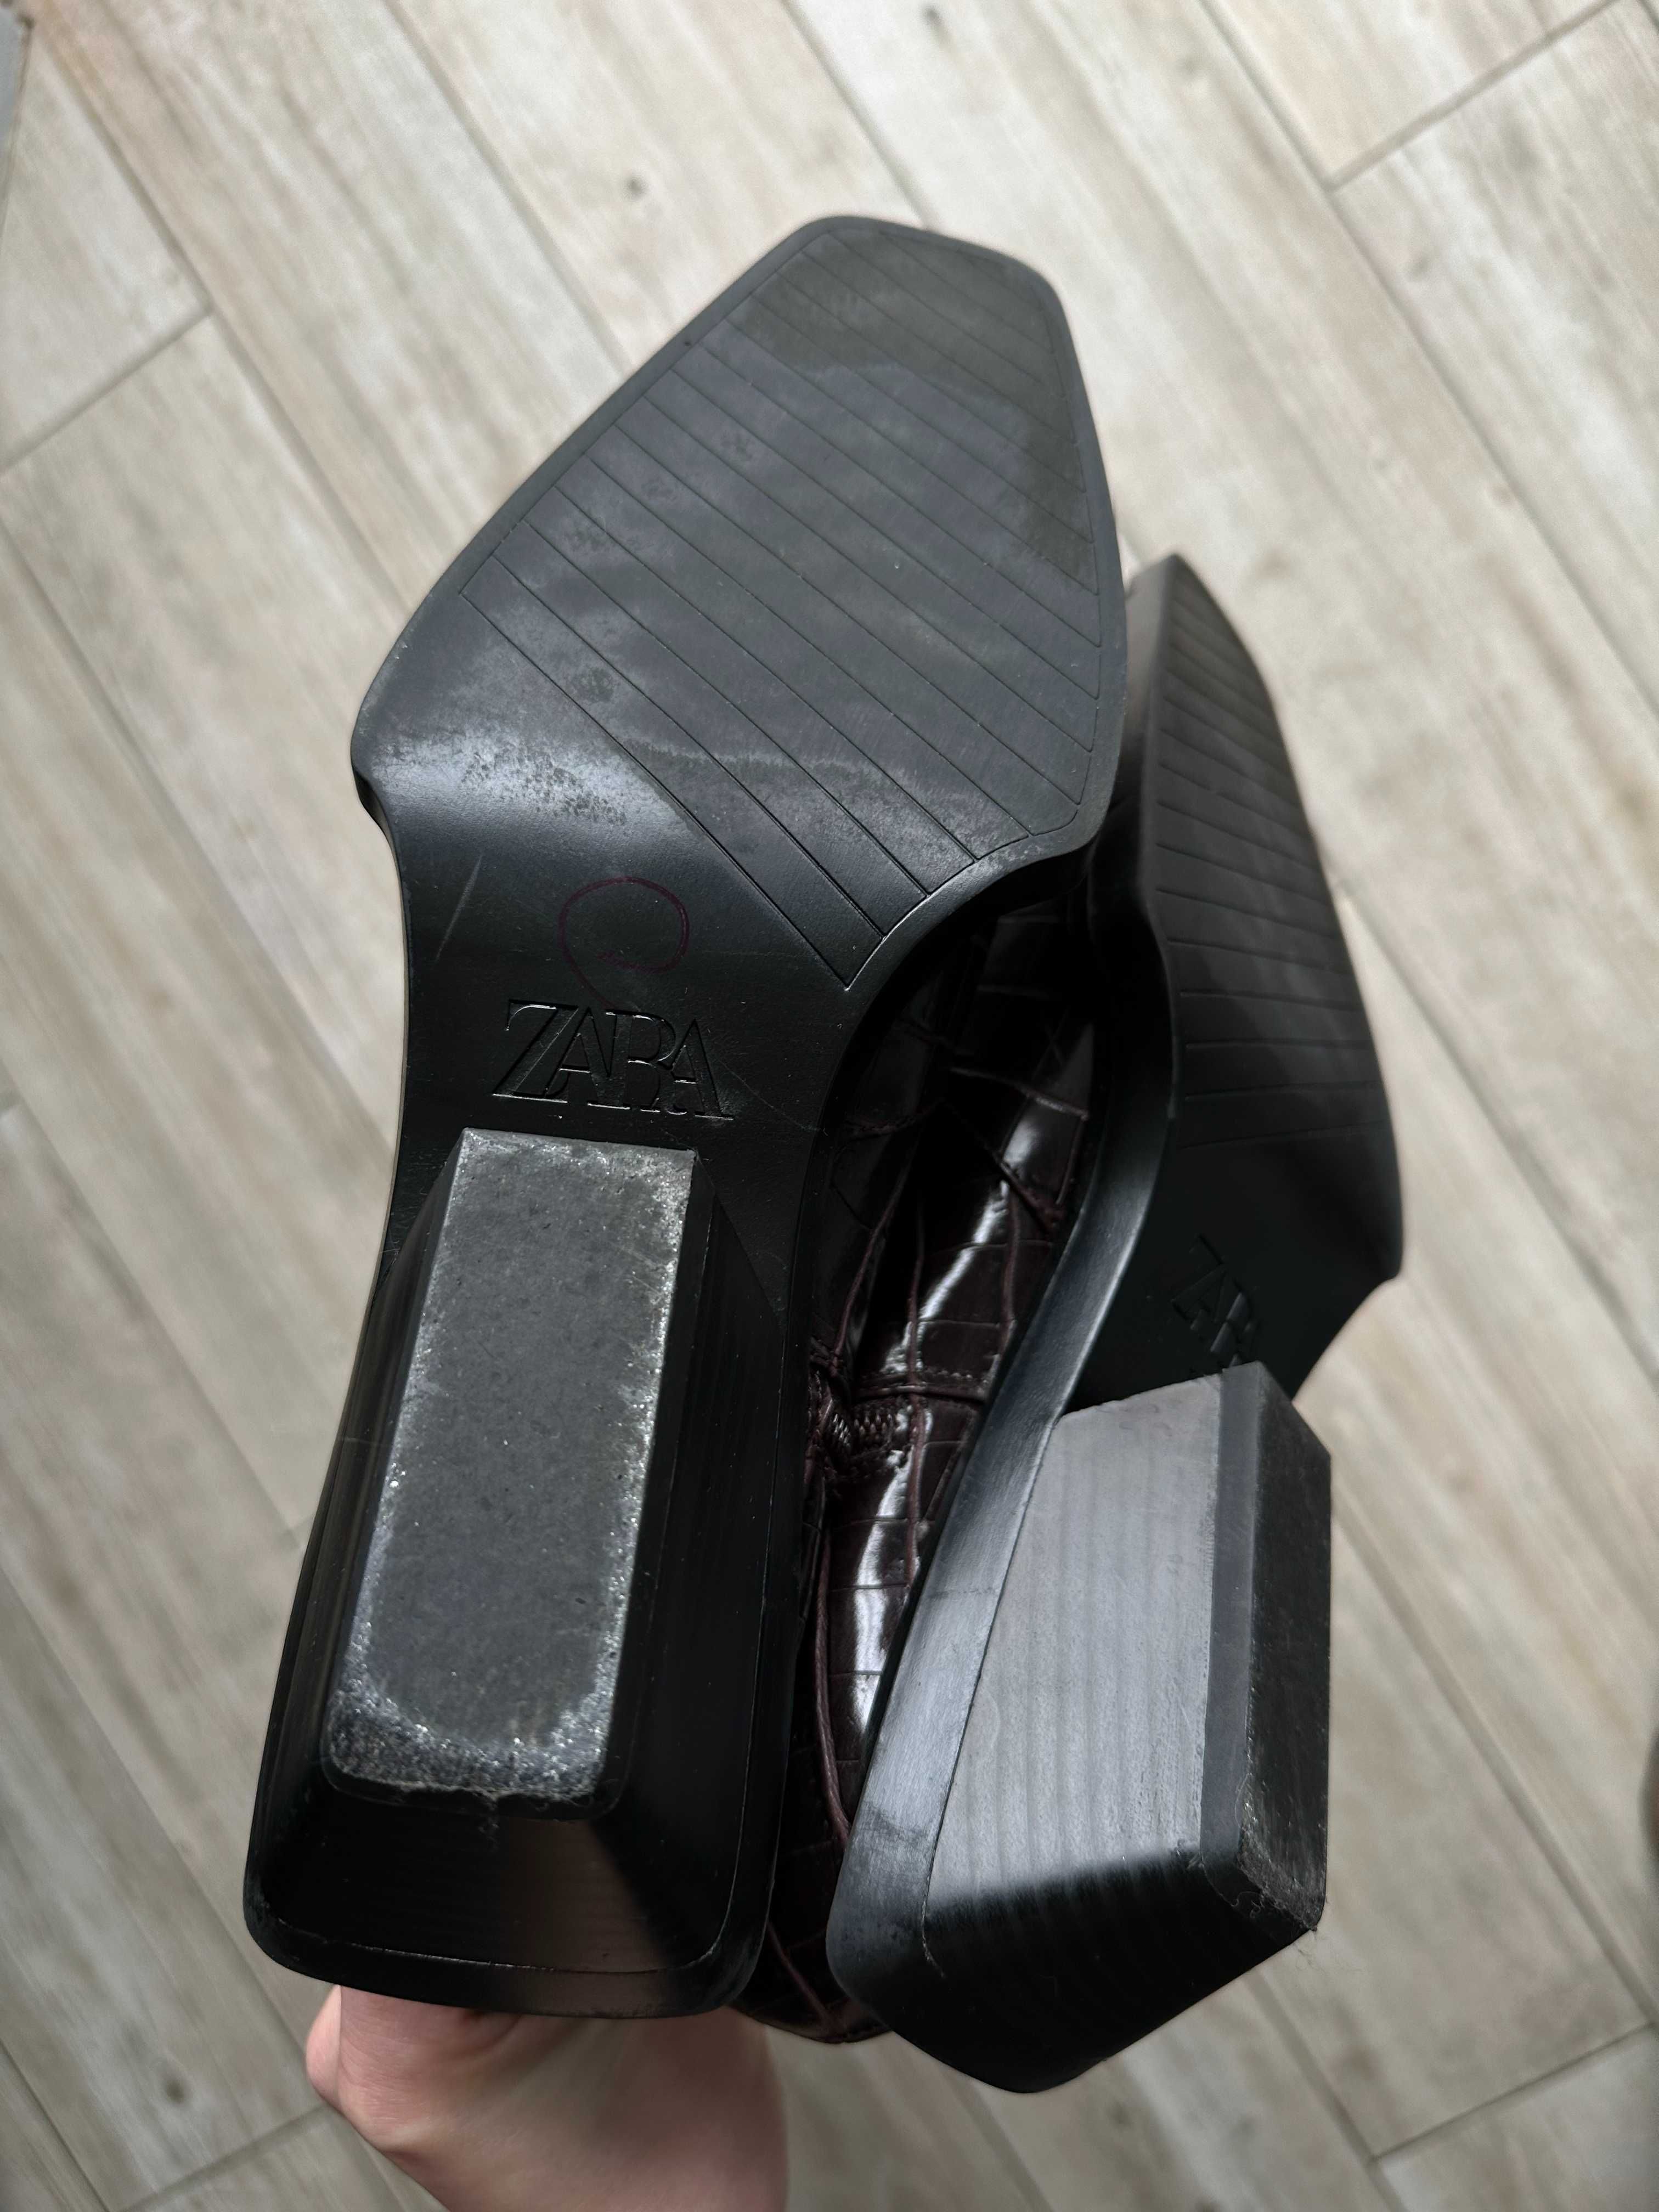 Високі чоботи козаки Zara коричневого кольору під крокодила, р. 39-40